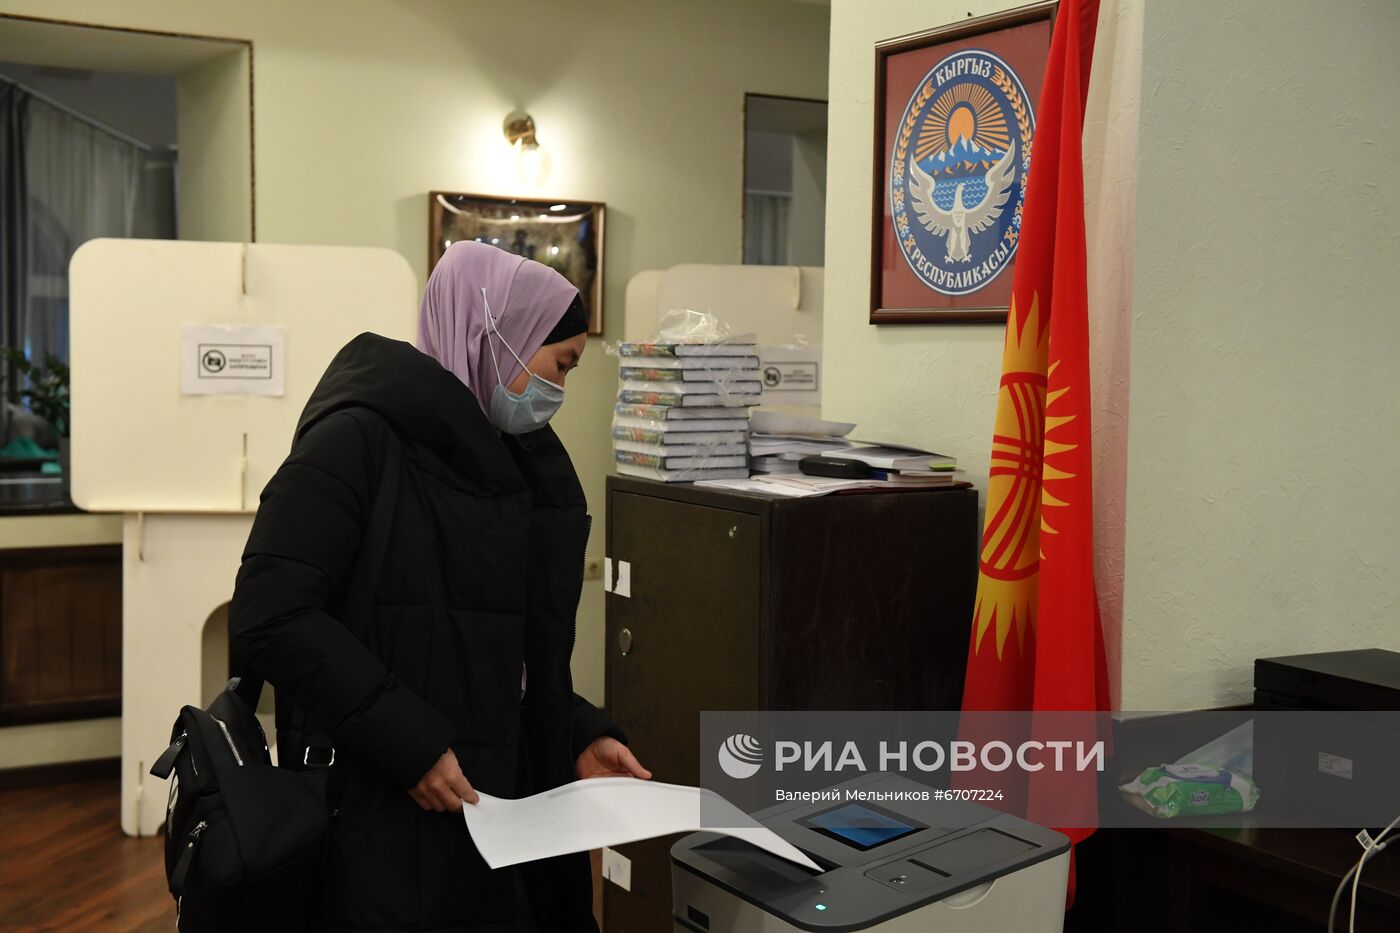 Голосование на парламентских выборах в посольстве Кыргызстана